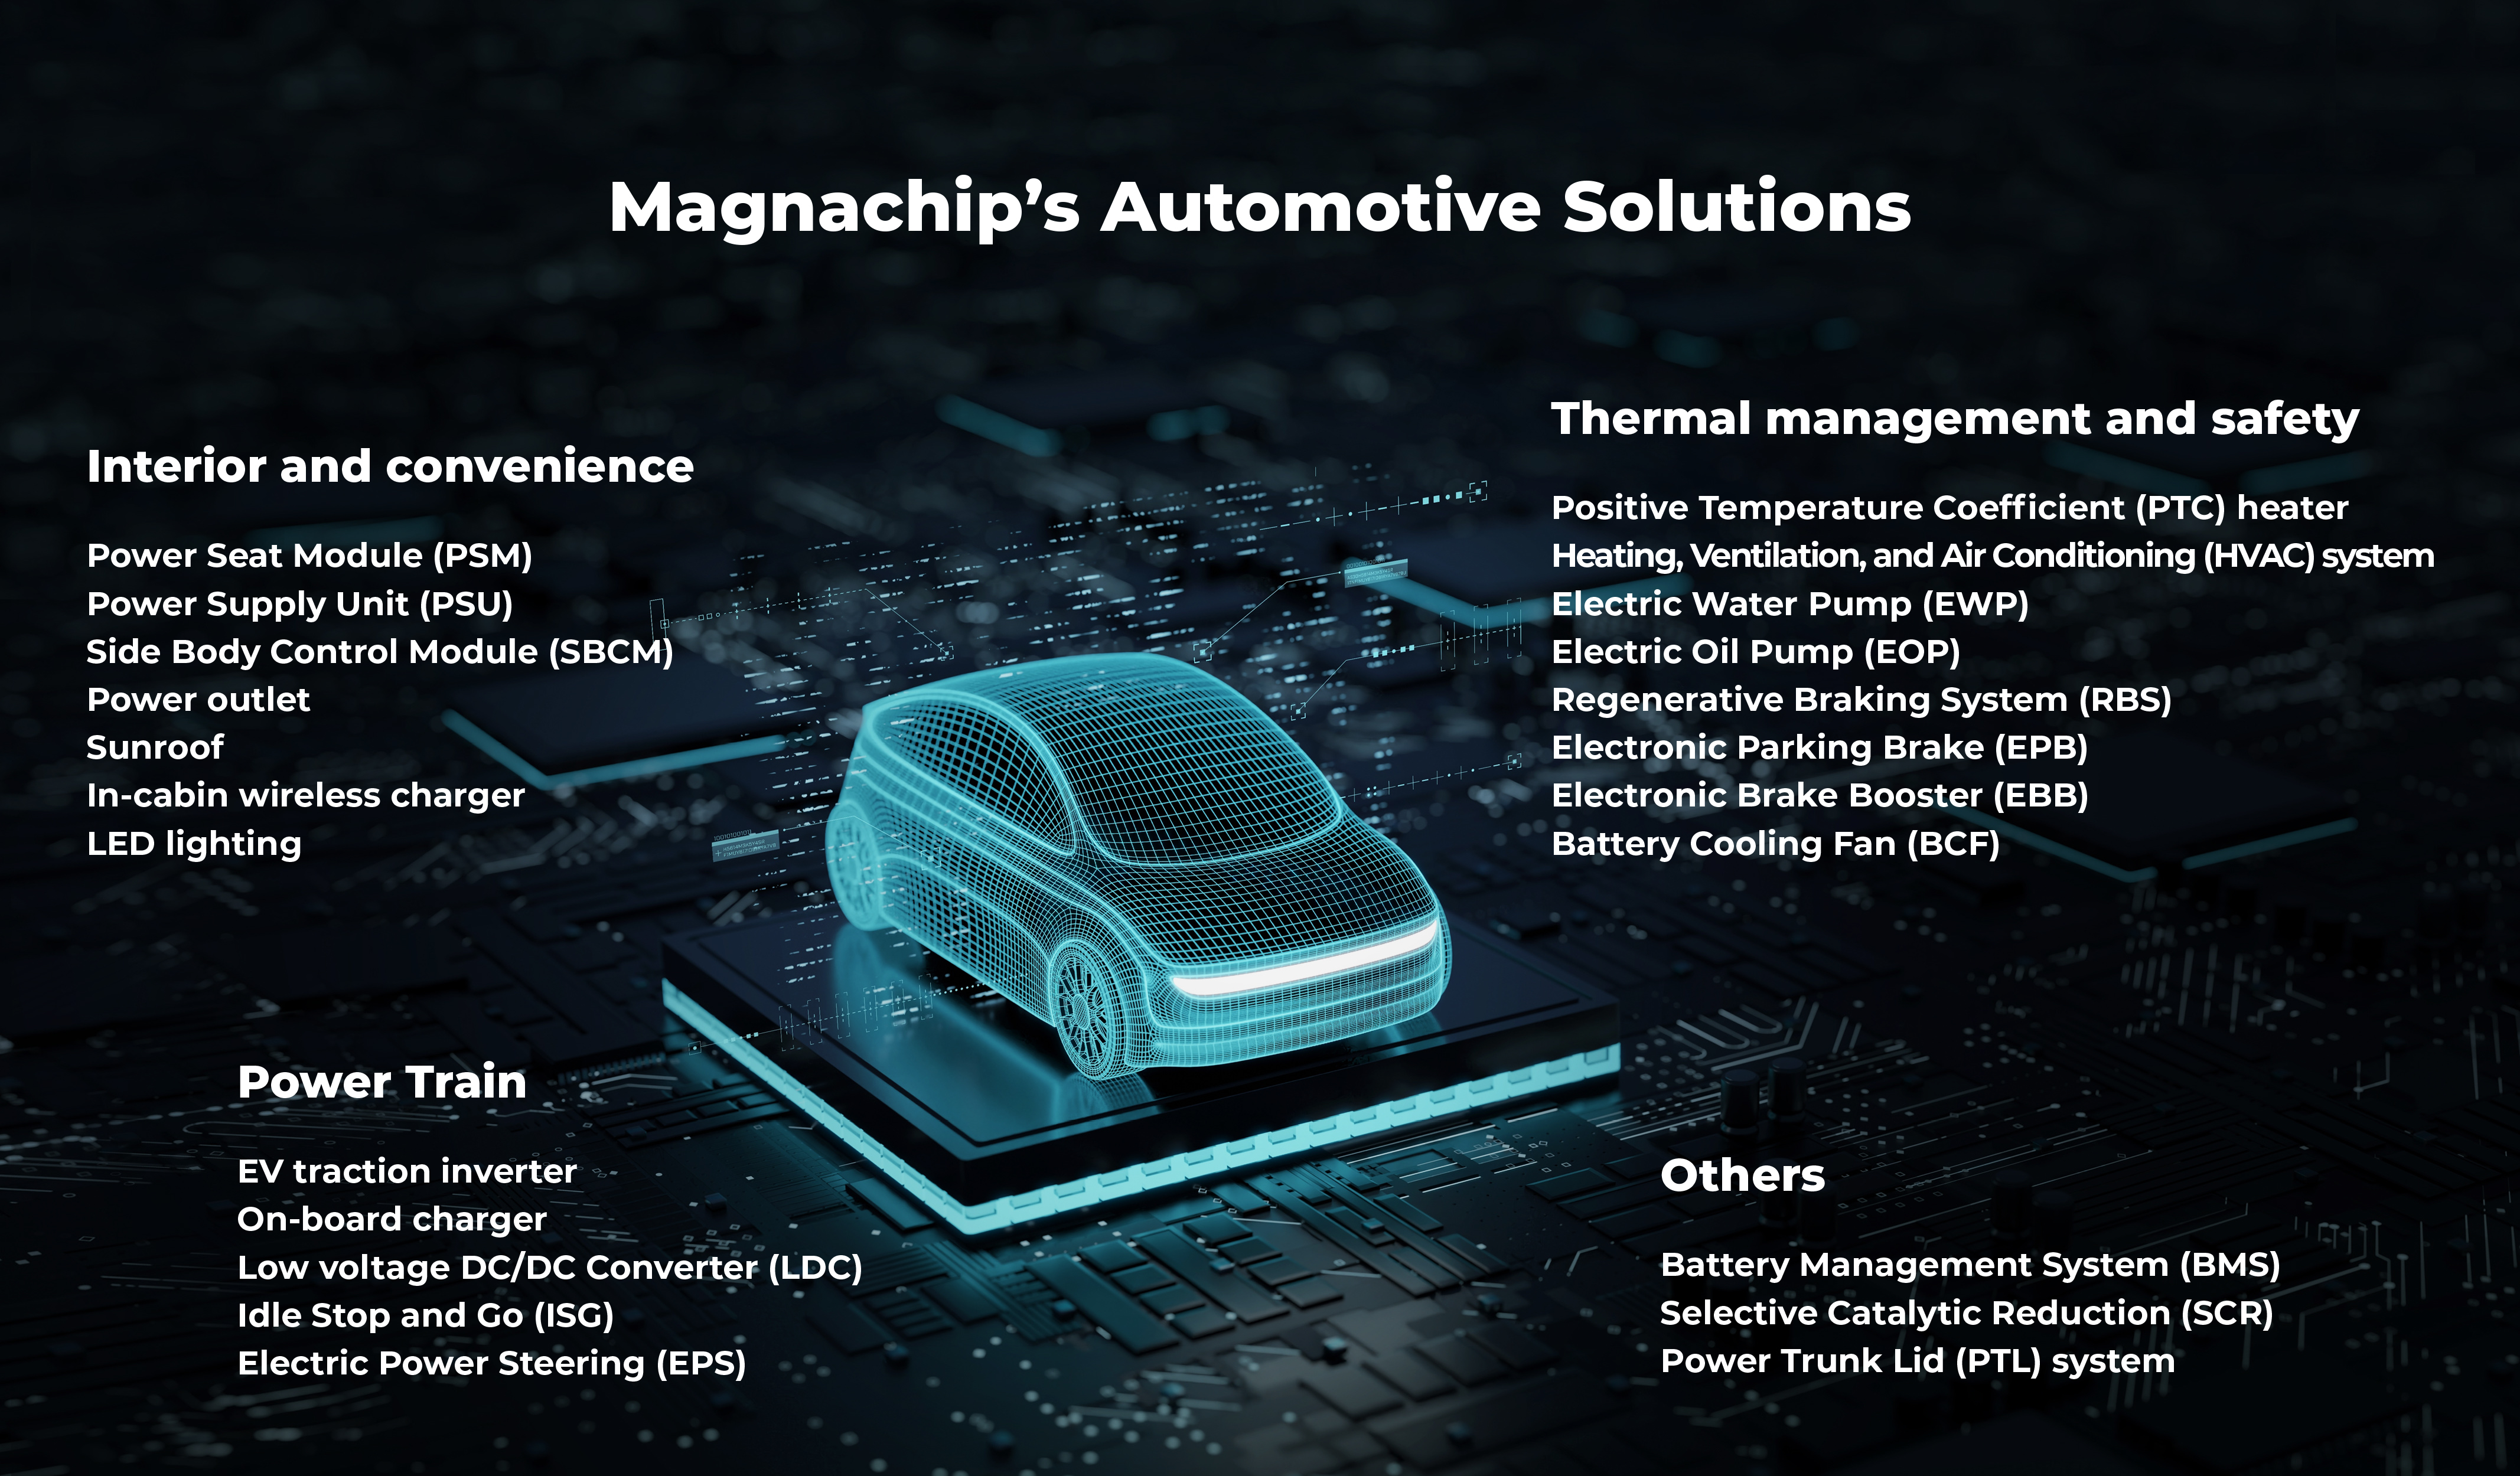 Magnachip’s Automotive Solutions_en